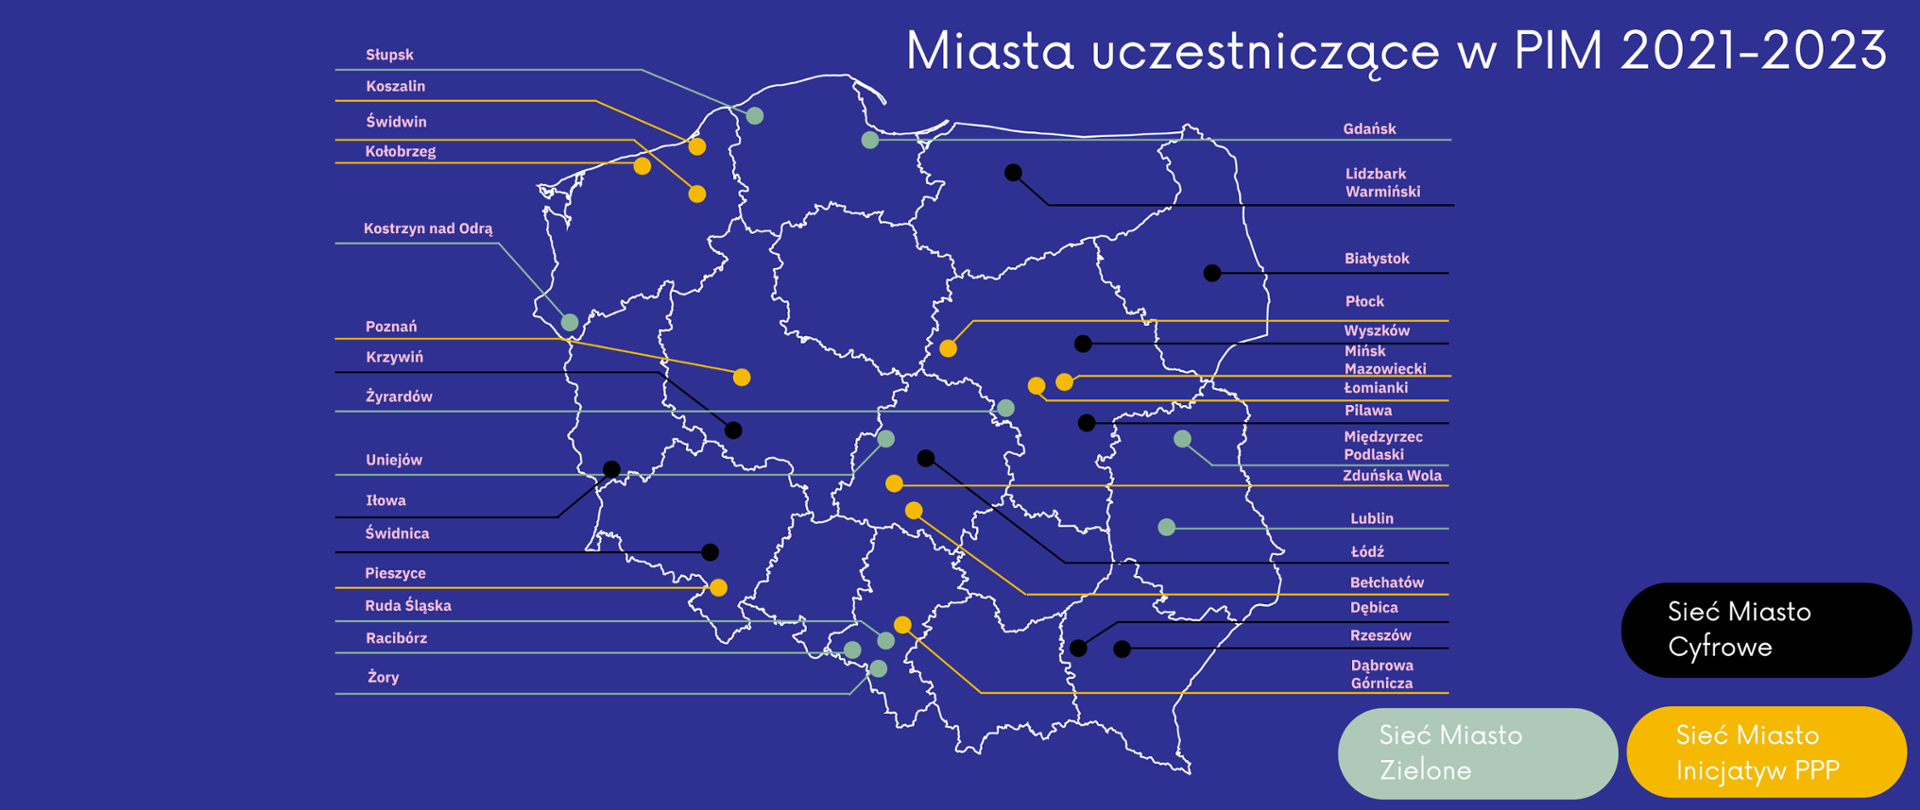 Mapa miast uczestniczących w PIM 2021-2023